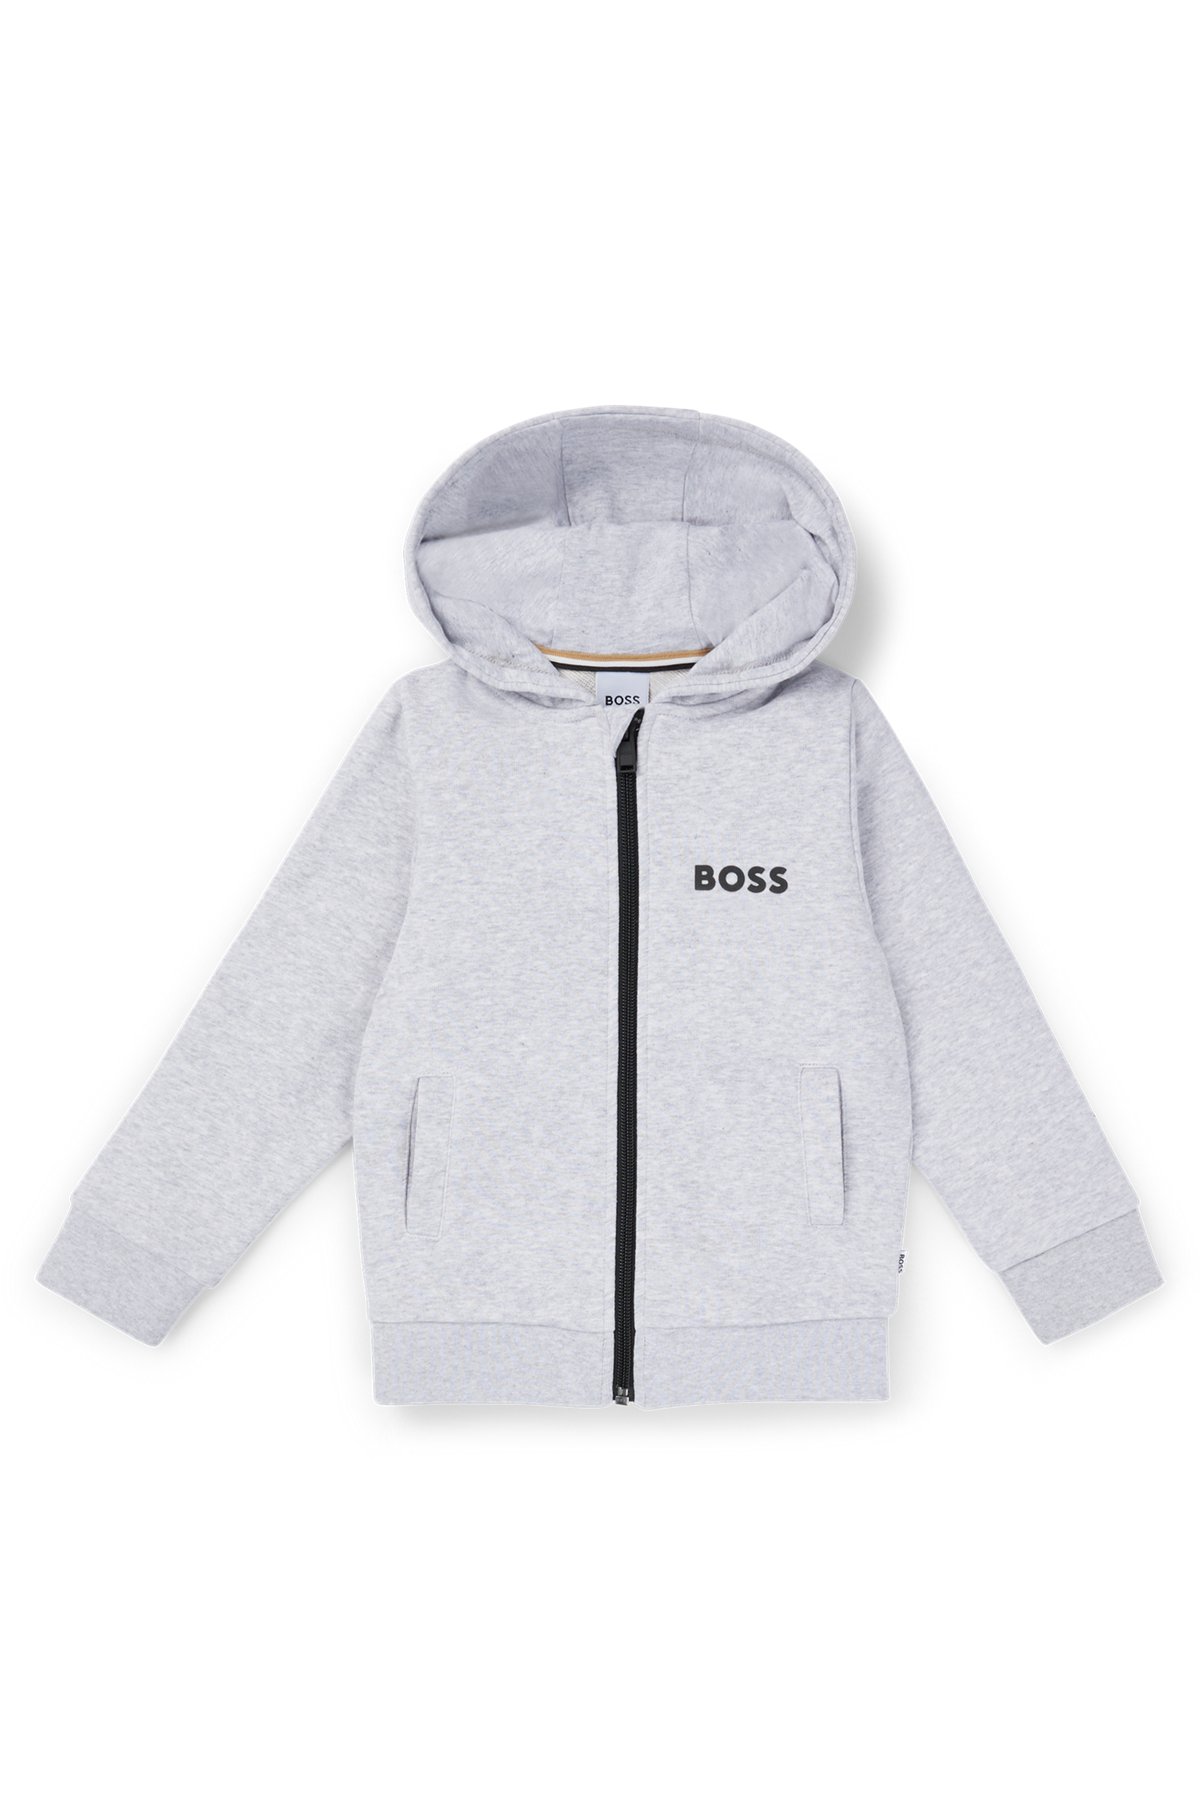 BOSS - Kids' zip-up hoodie with contrast logo